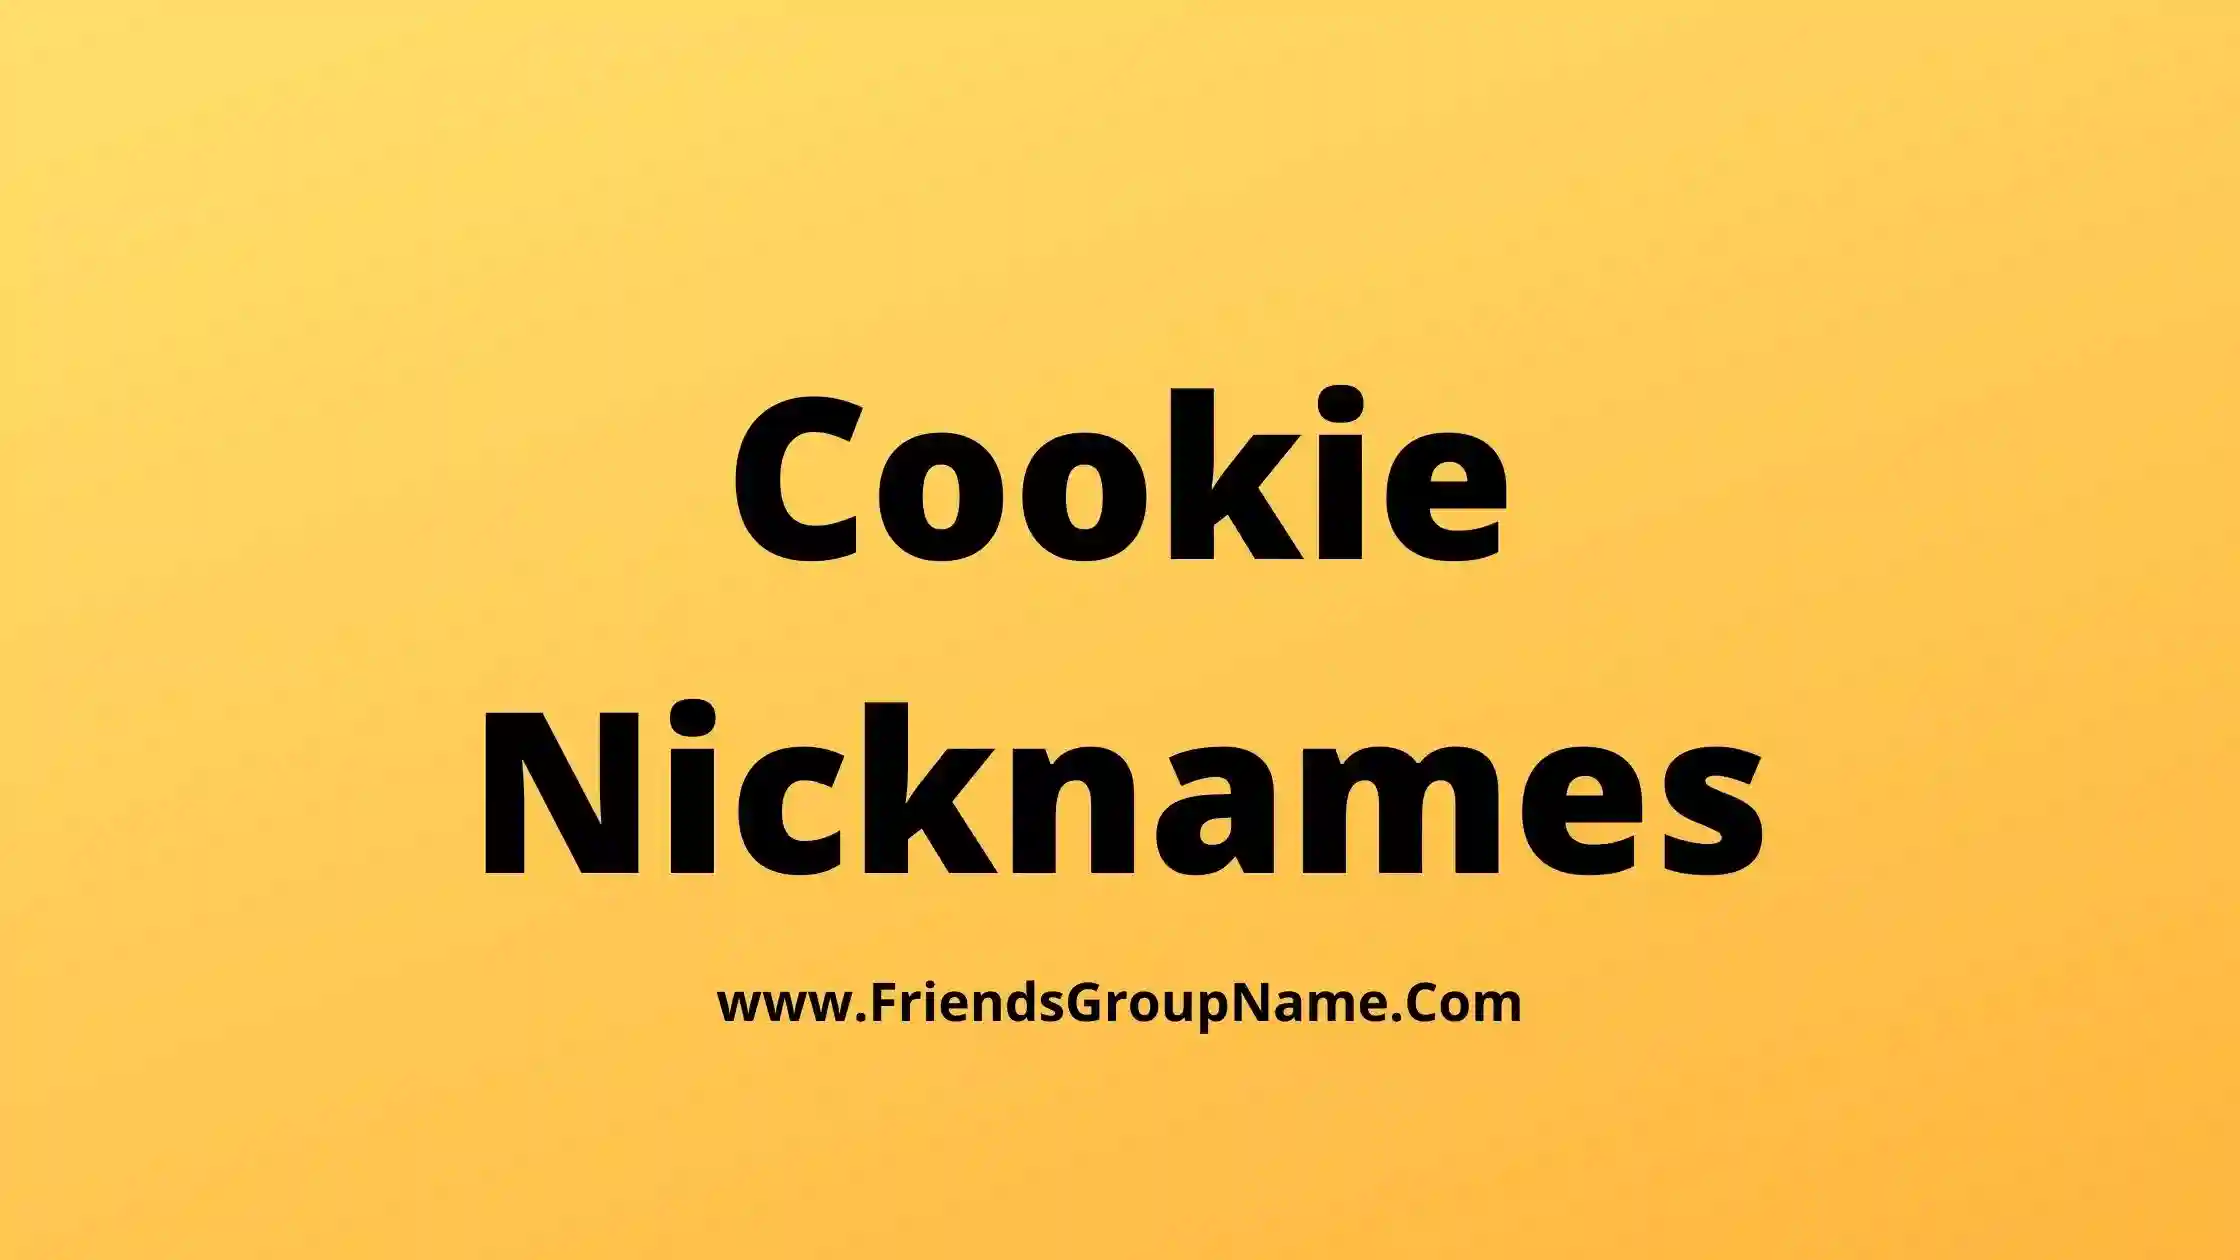 Cookie Nicknames